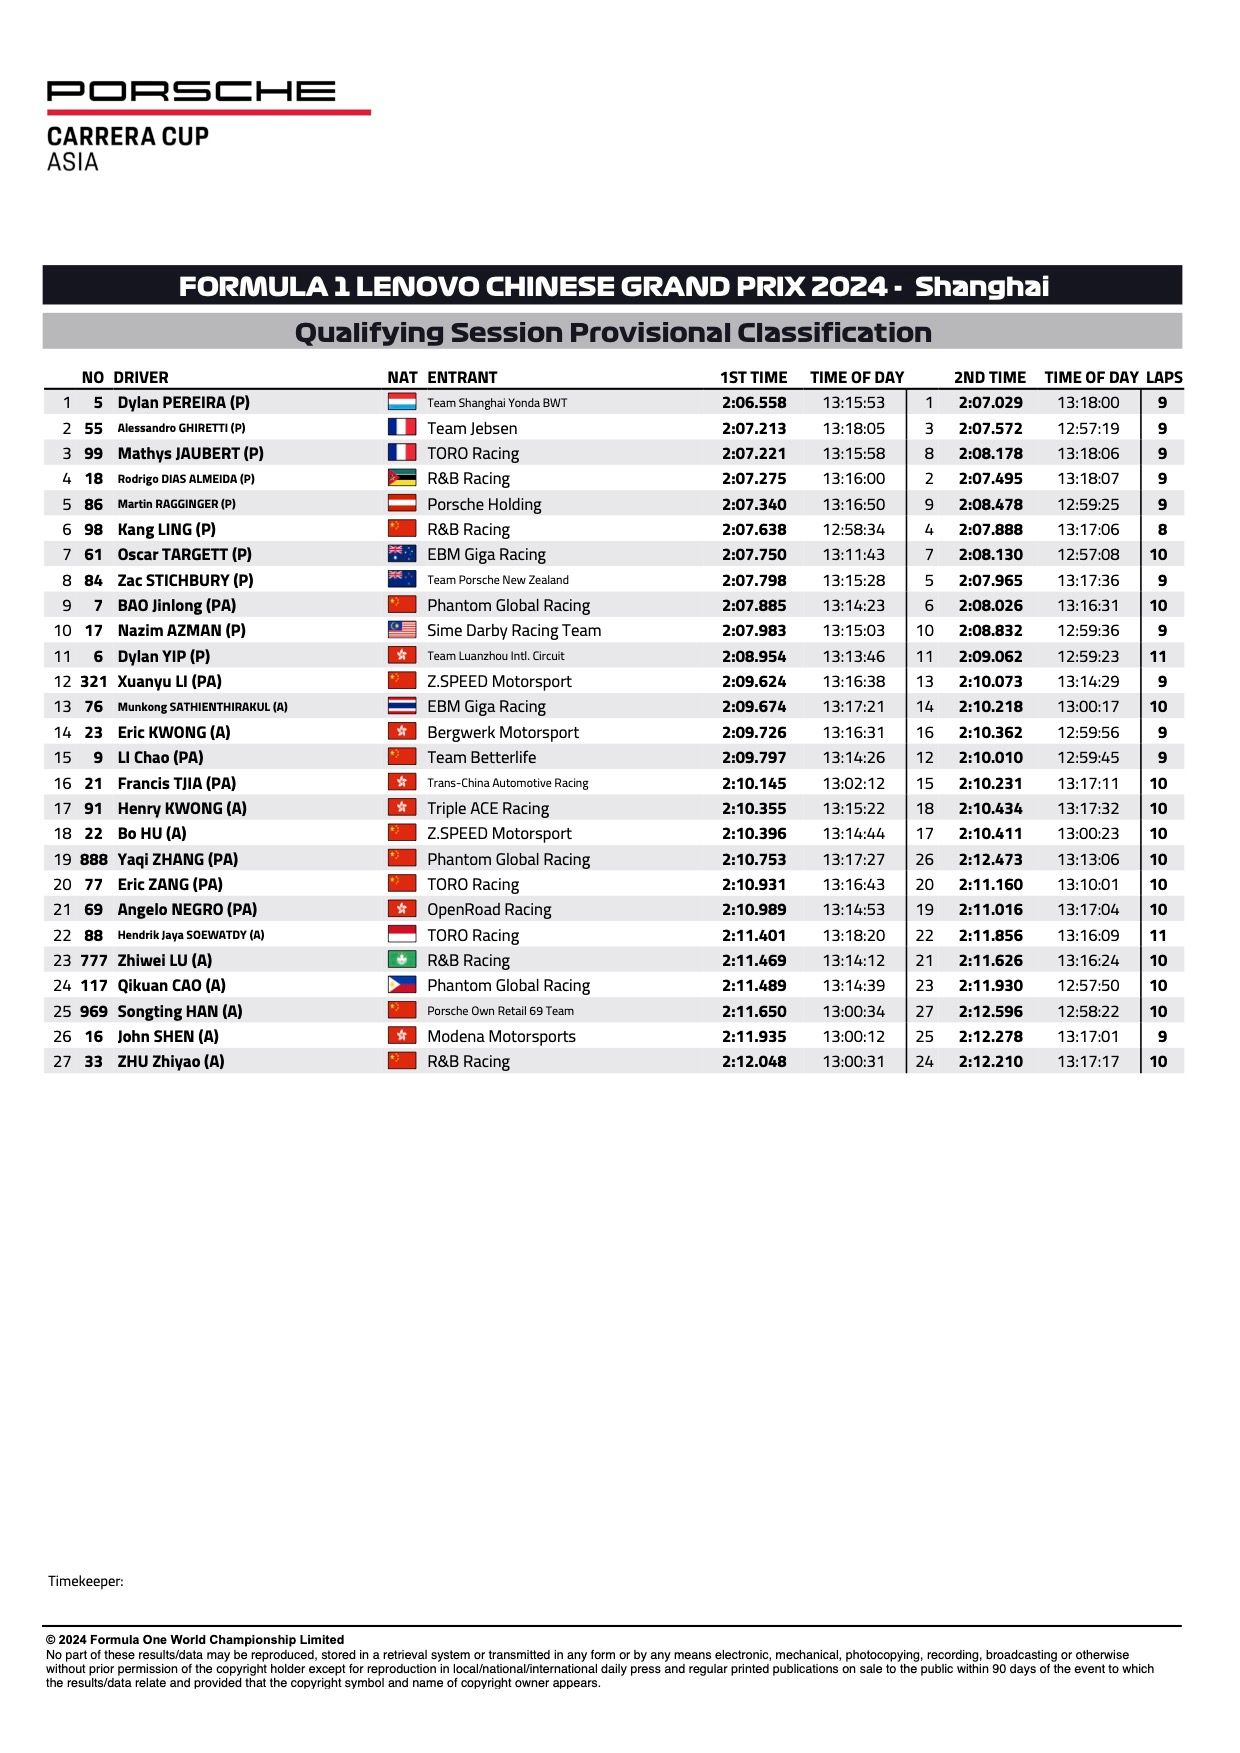 Resultados provisionales de clasificación de las rondas 1 y 2 de Shanghai Porsche Carrera Cup Asia 2024 Shanghai